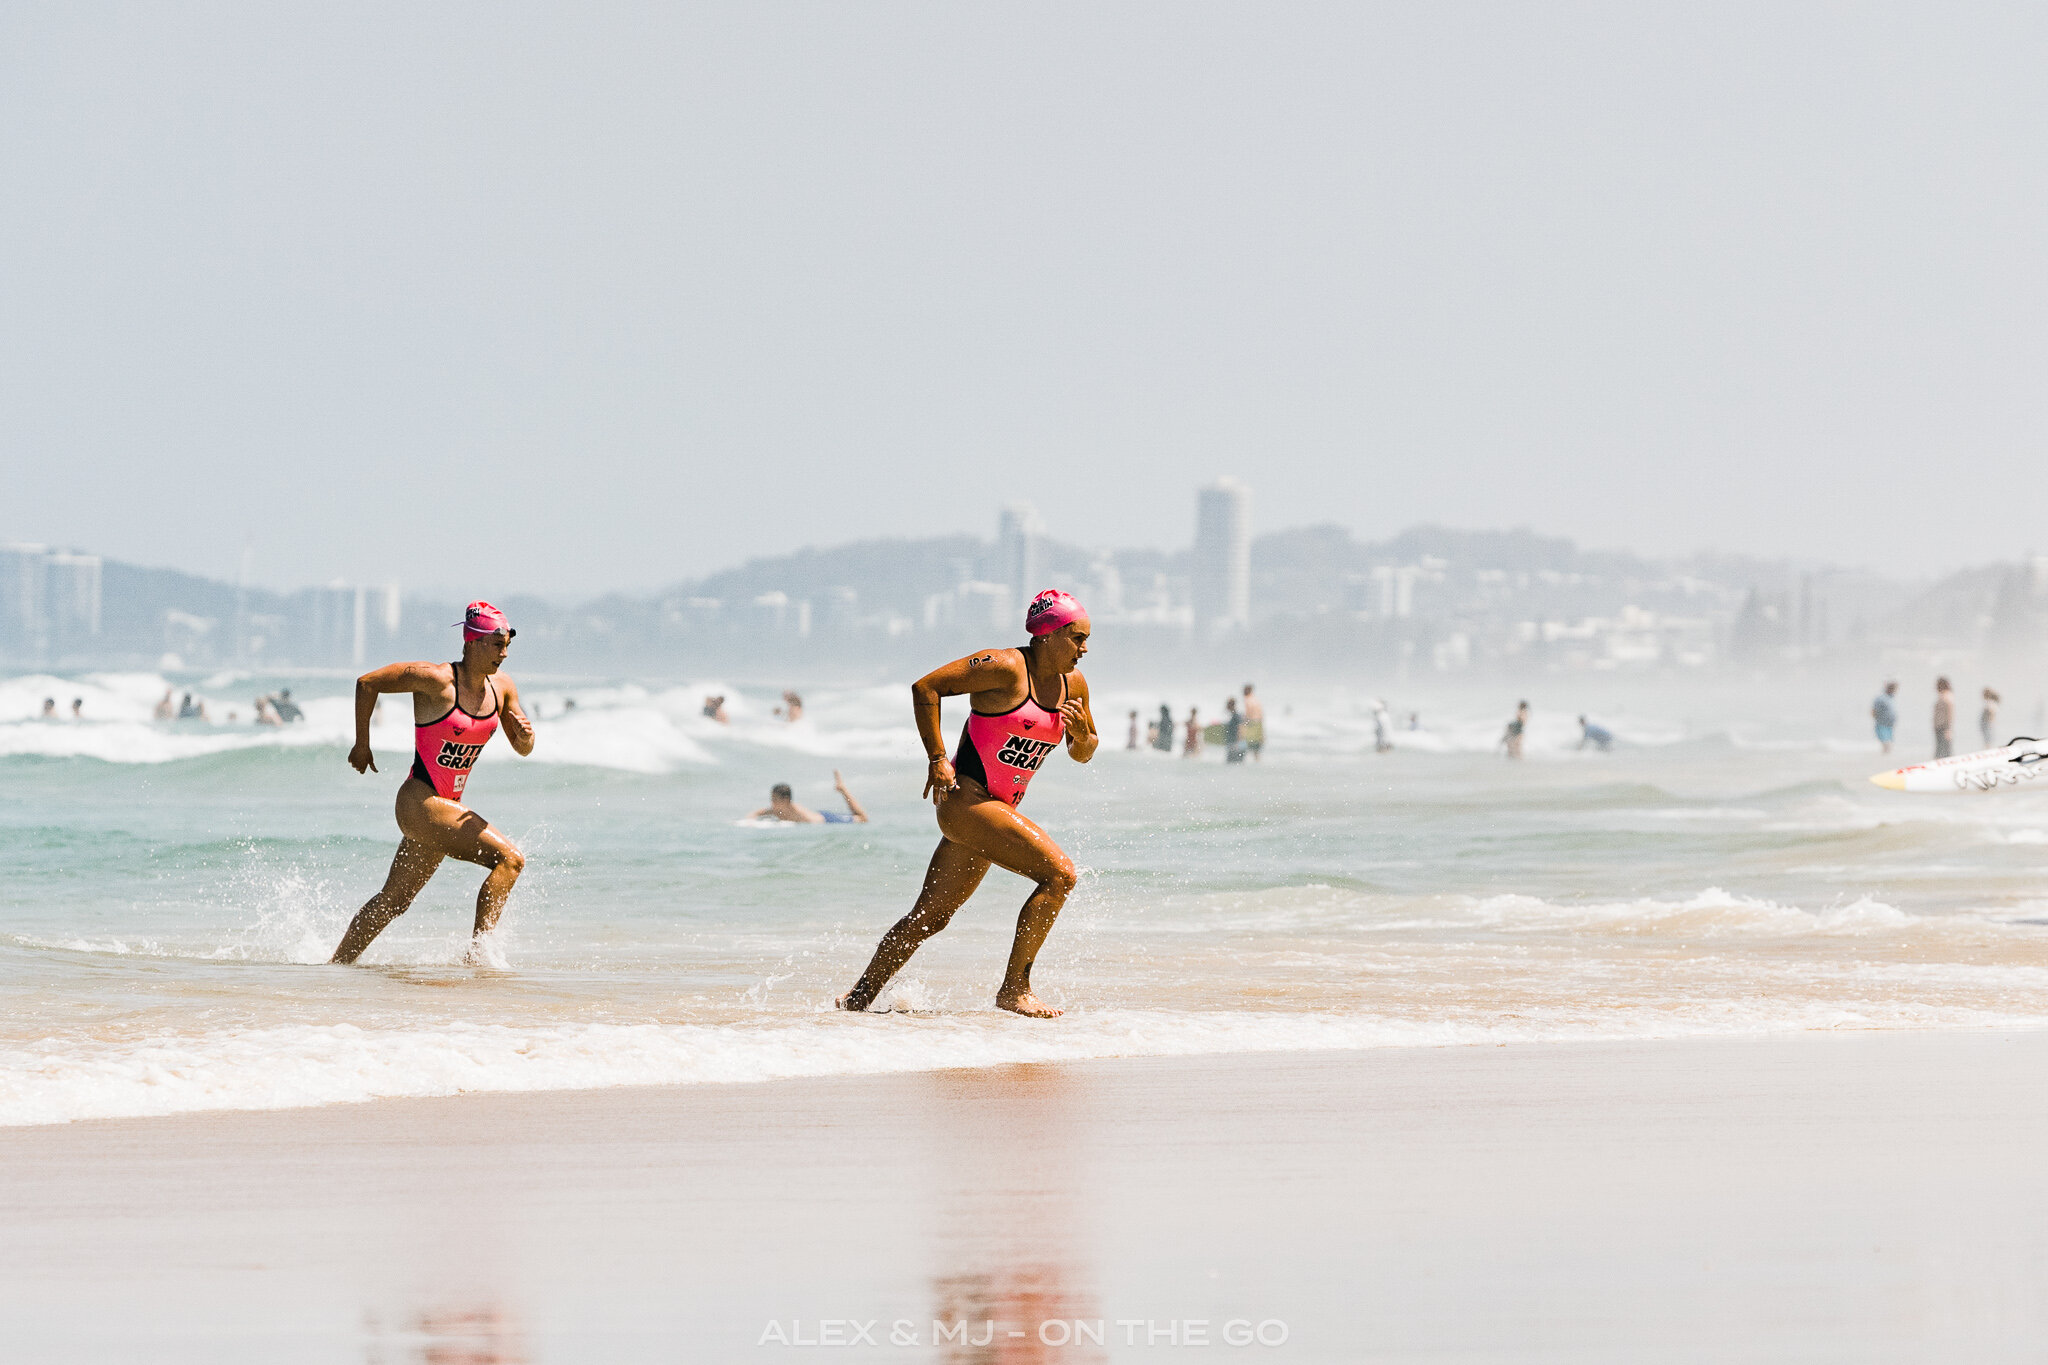 Alex-MJ-On-the-GO-Australie-Brisbane-et-ses-environs-Surfers-paradis-ironman-course.jpg